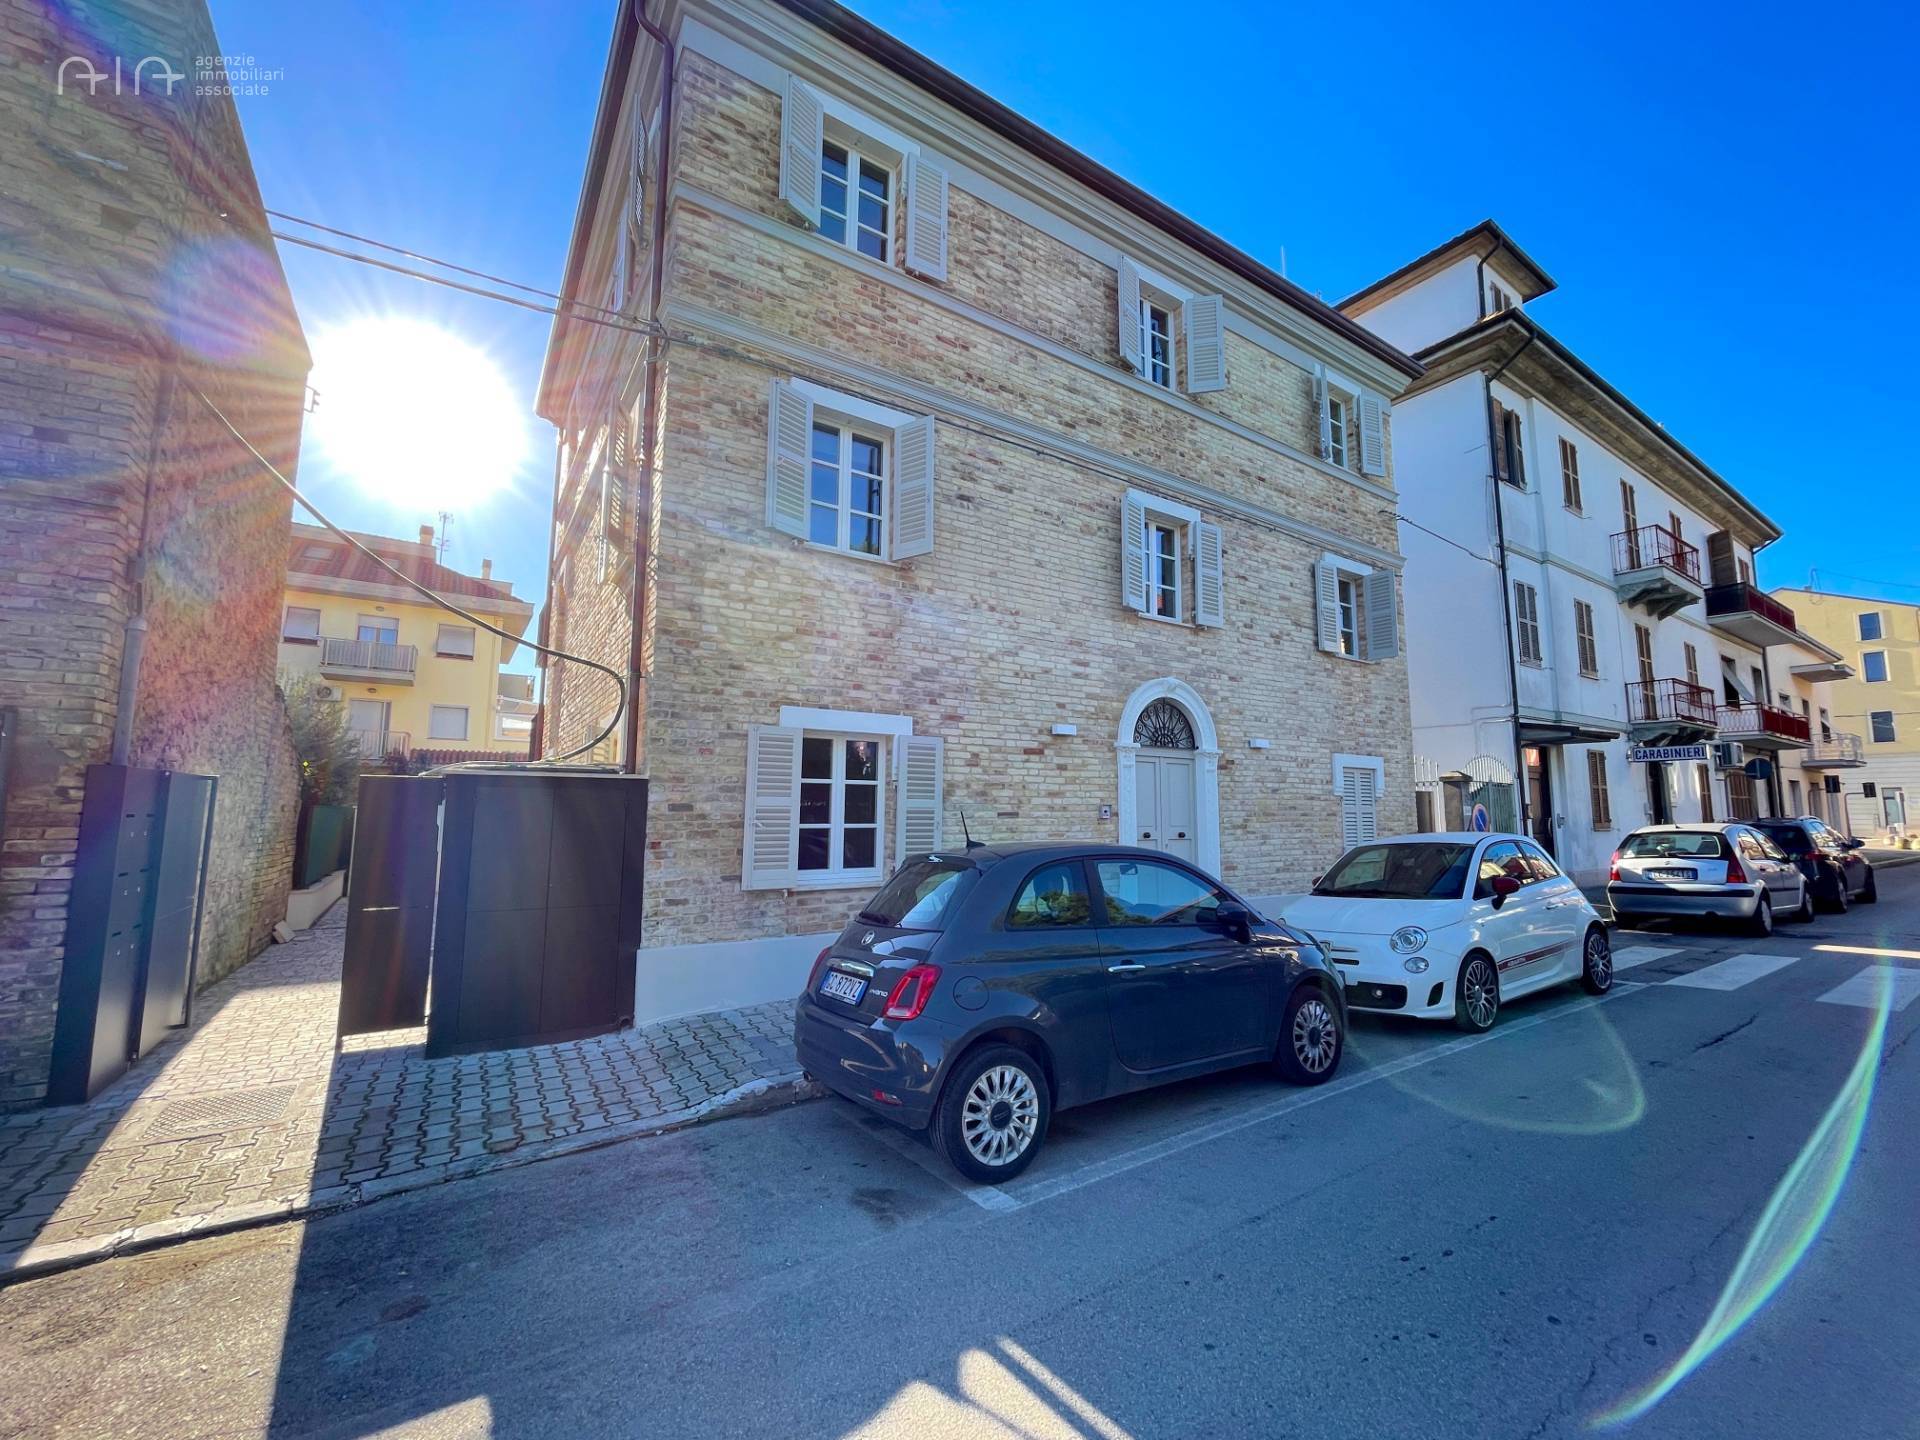 Appartamento in affitto a San Benedetto del Tronto, 3 locali, zona Località: PortoDascoliresidenziale, prezzo € 750 | PortaleAgenzieImmobiliari.it